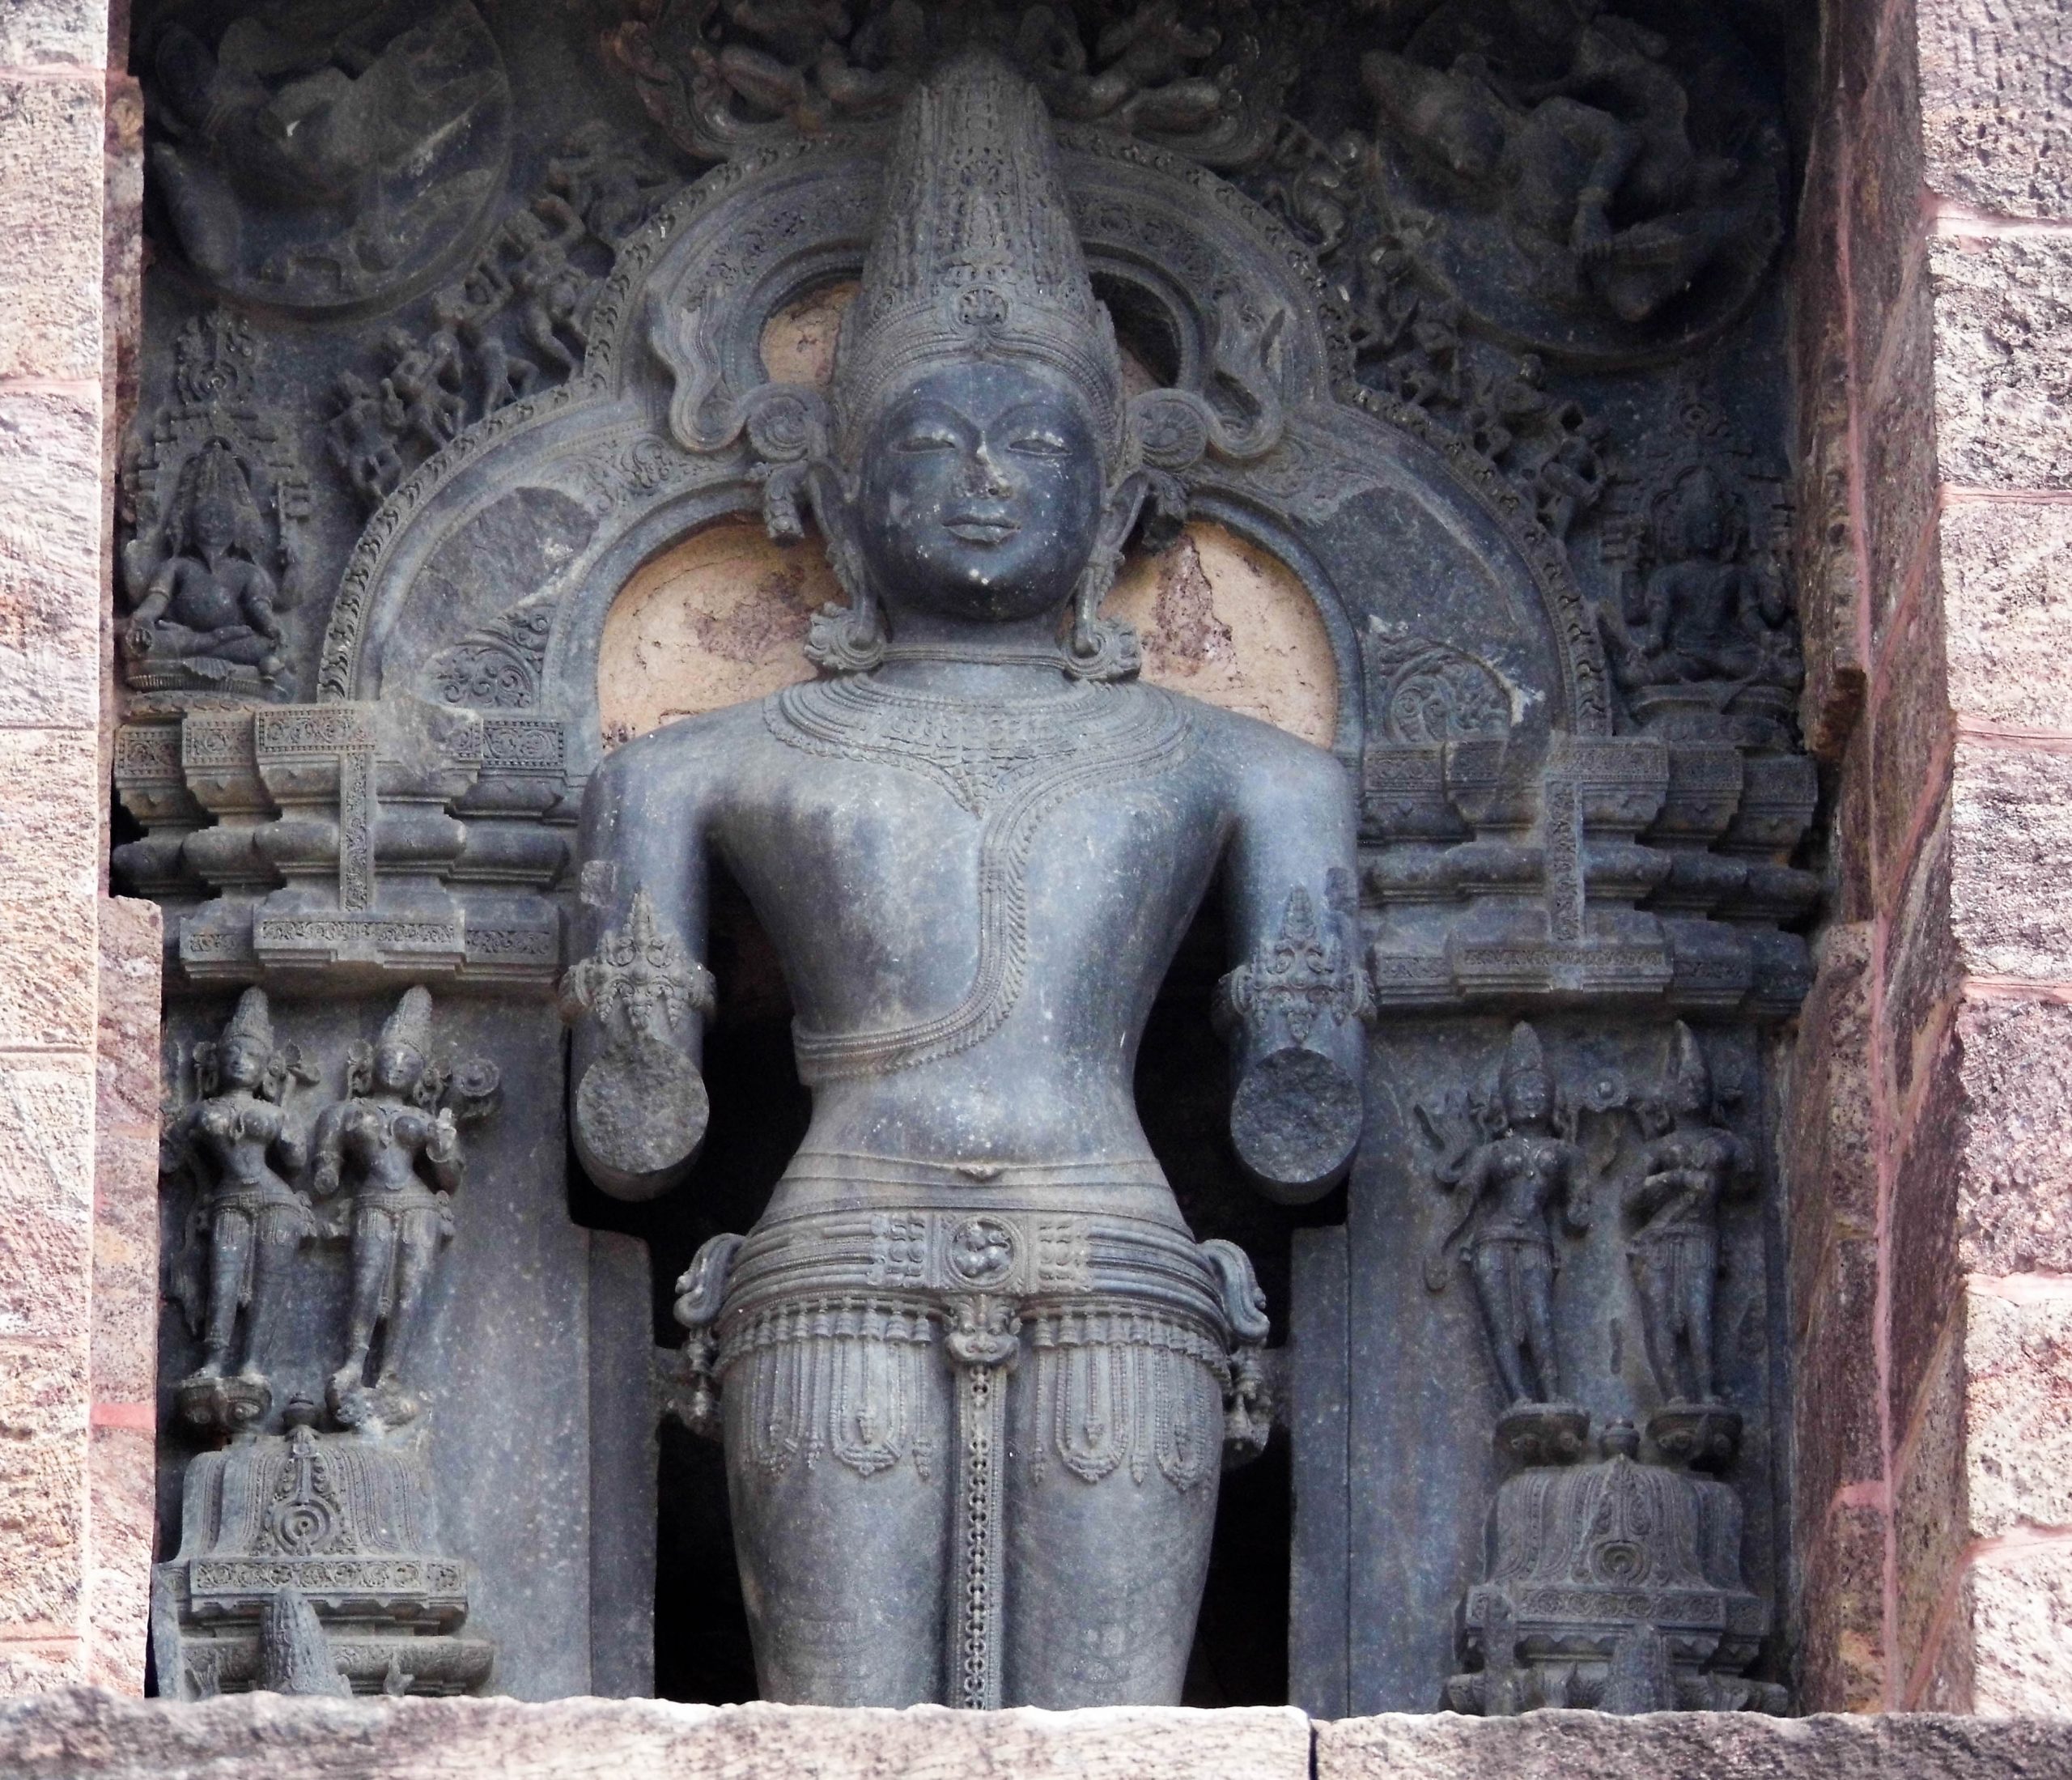 A statue at Konark sun temple in Odisha